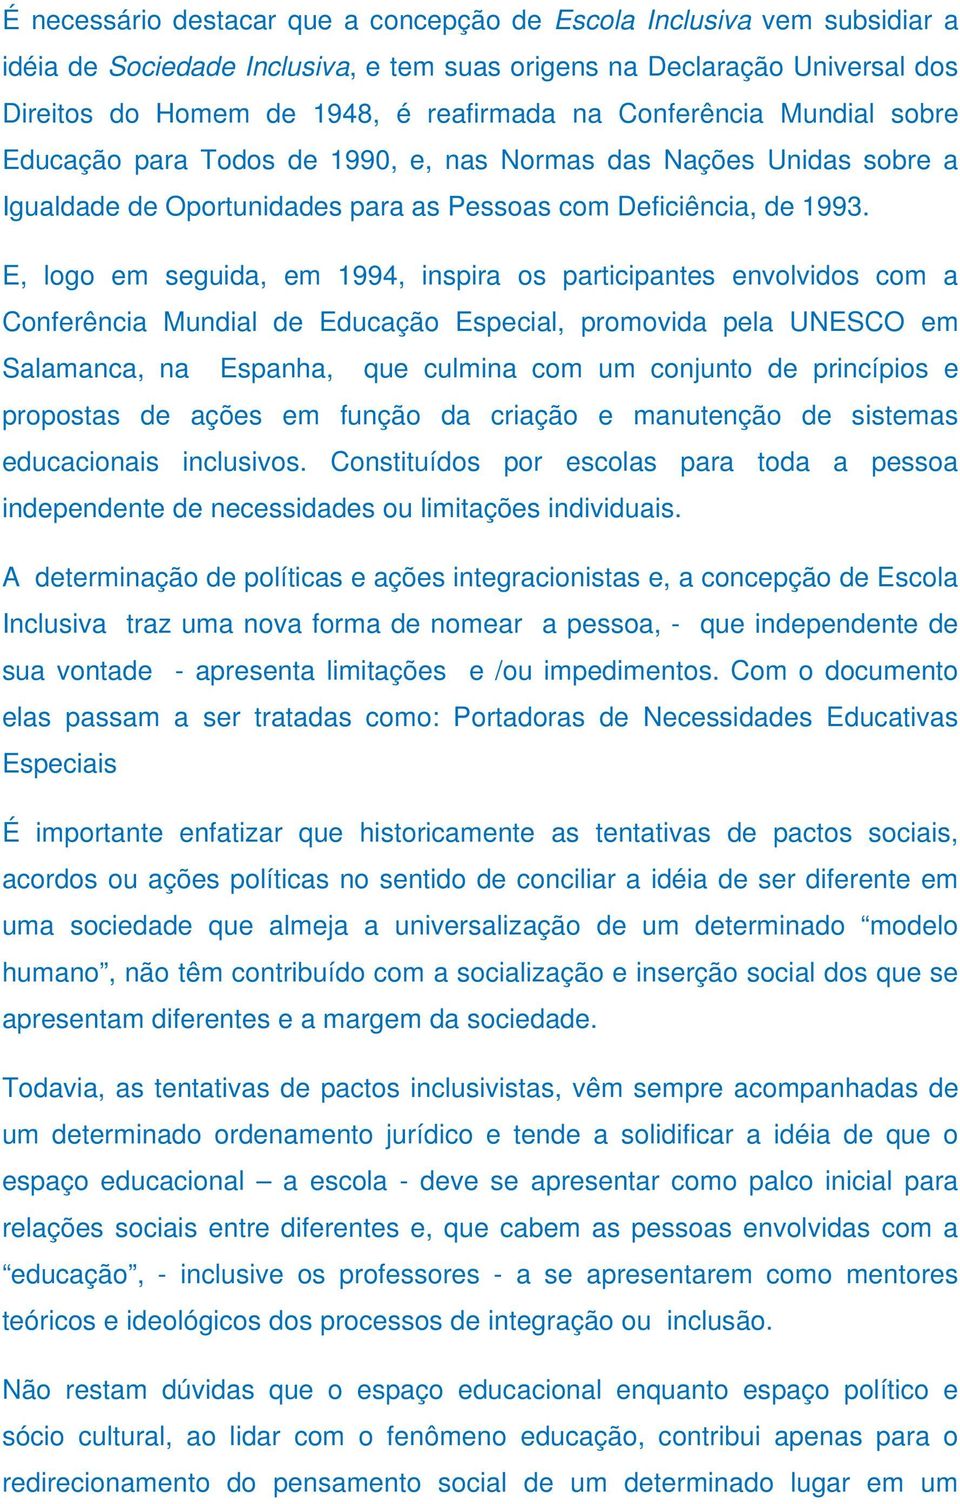 E, logo em seguida, em 1994, inspira os participantes envolvidos com a Conferência Mundial de Educação Especial, promovida pela UNESCO em Salamanca, na Espanha, que culmina com um conjunto de